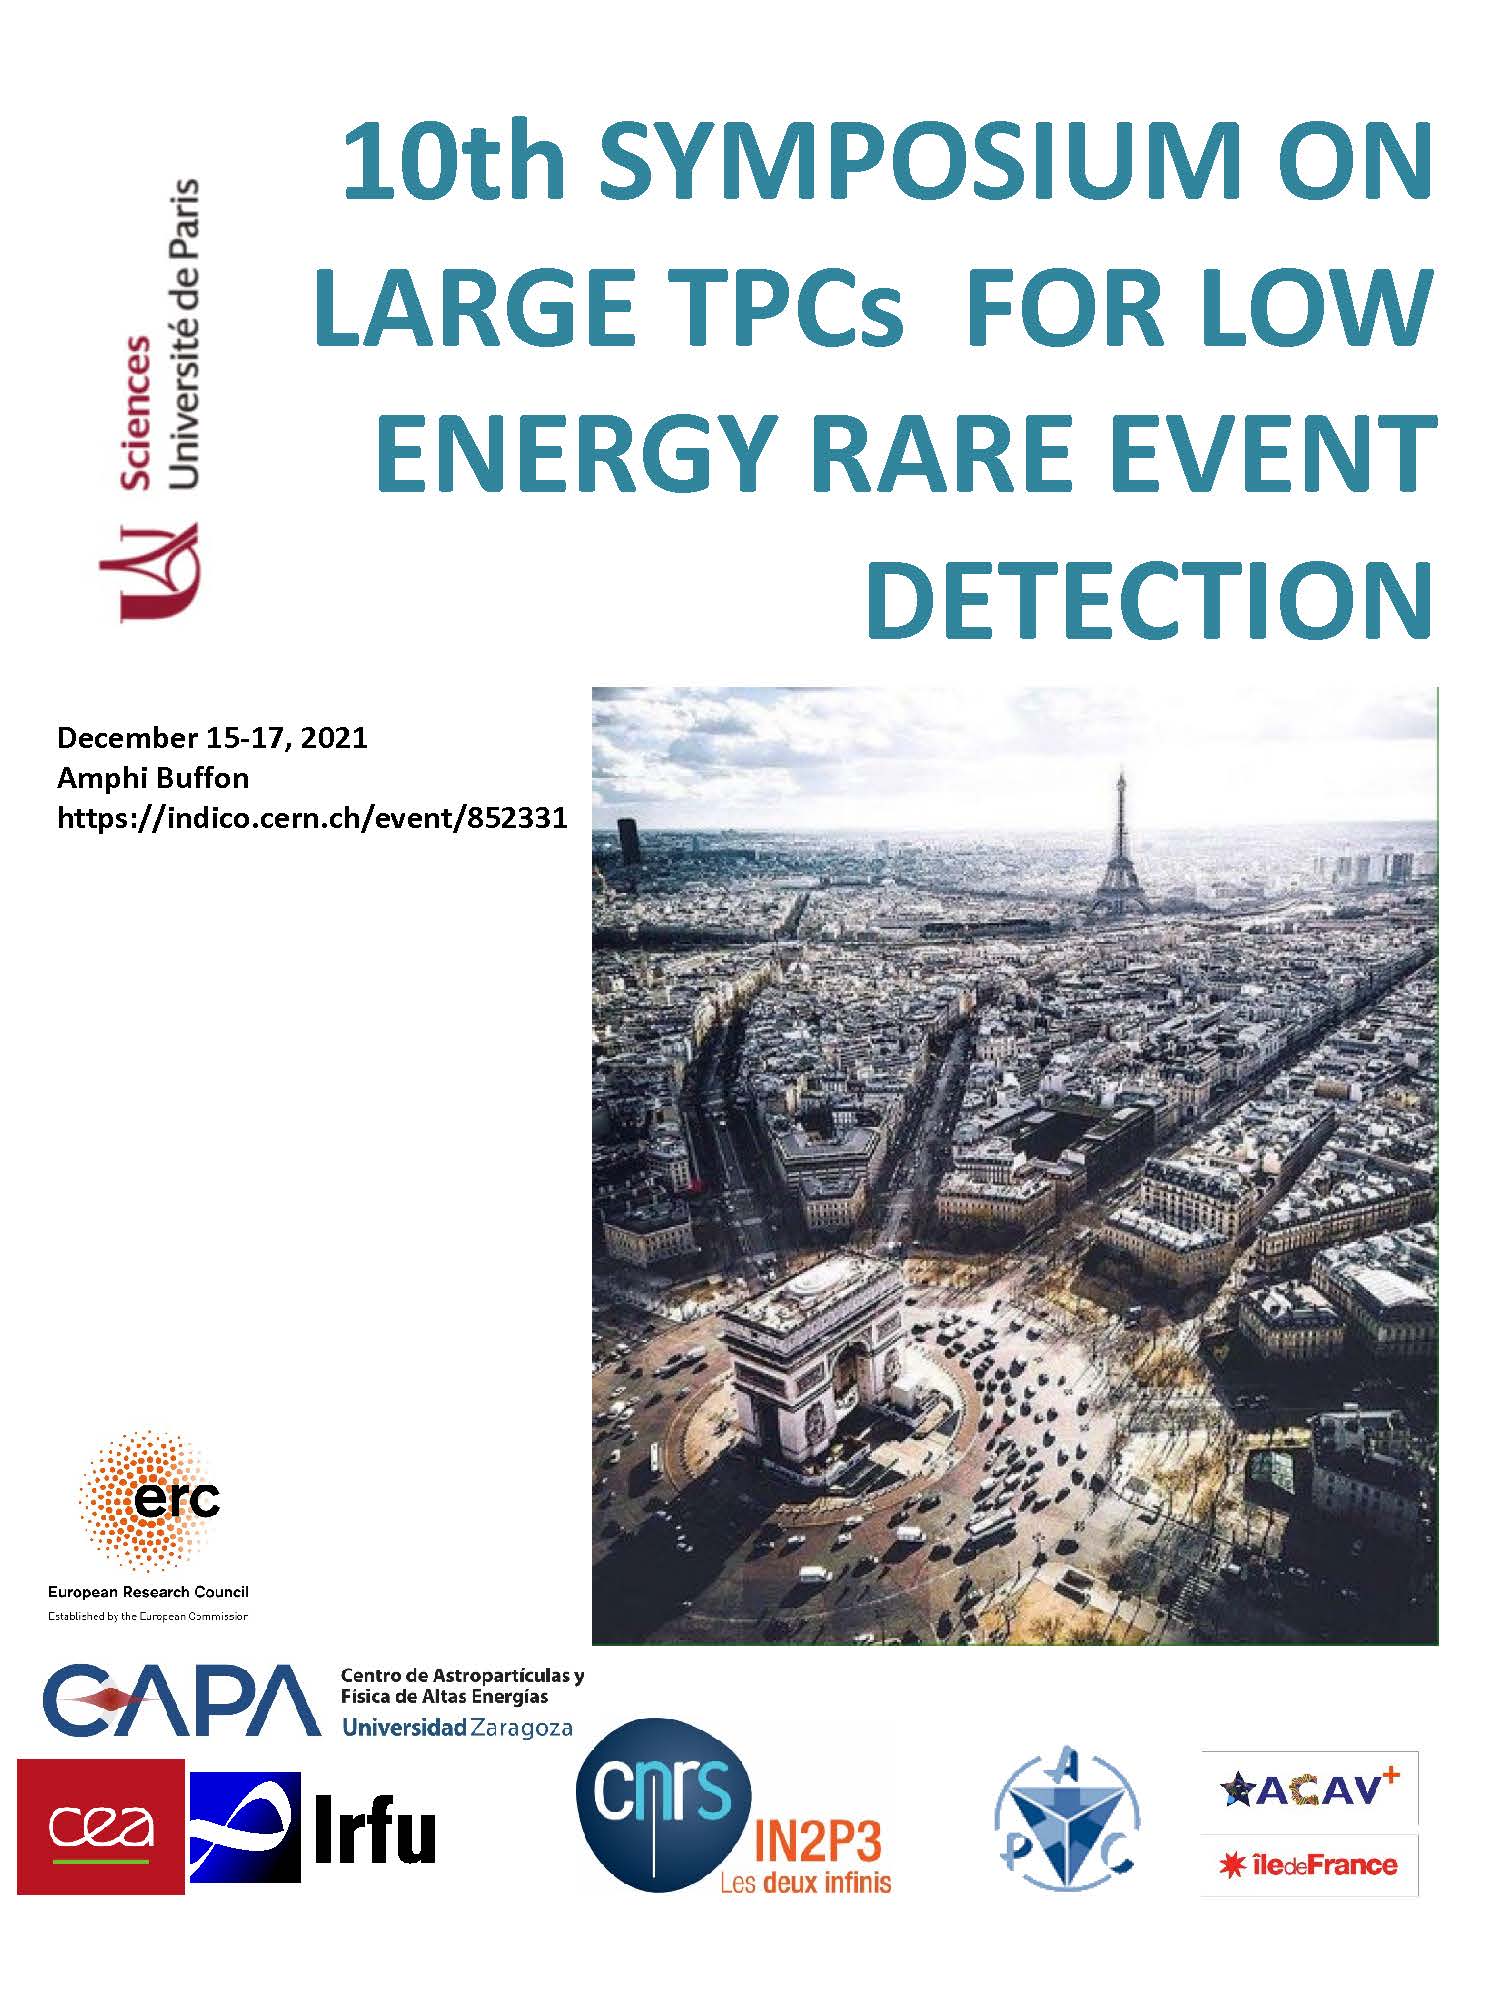 Le 10e symposium Large TPCs for Low-Energy Rare Events se déroulera du 15 au 17 décembre 2021: inscrivez-vous avant le 5 décembre !